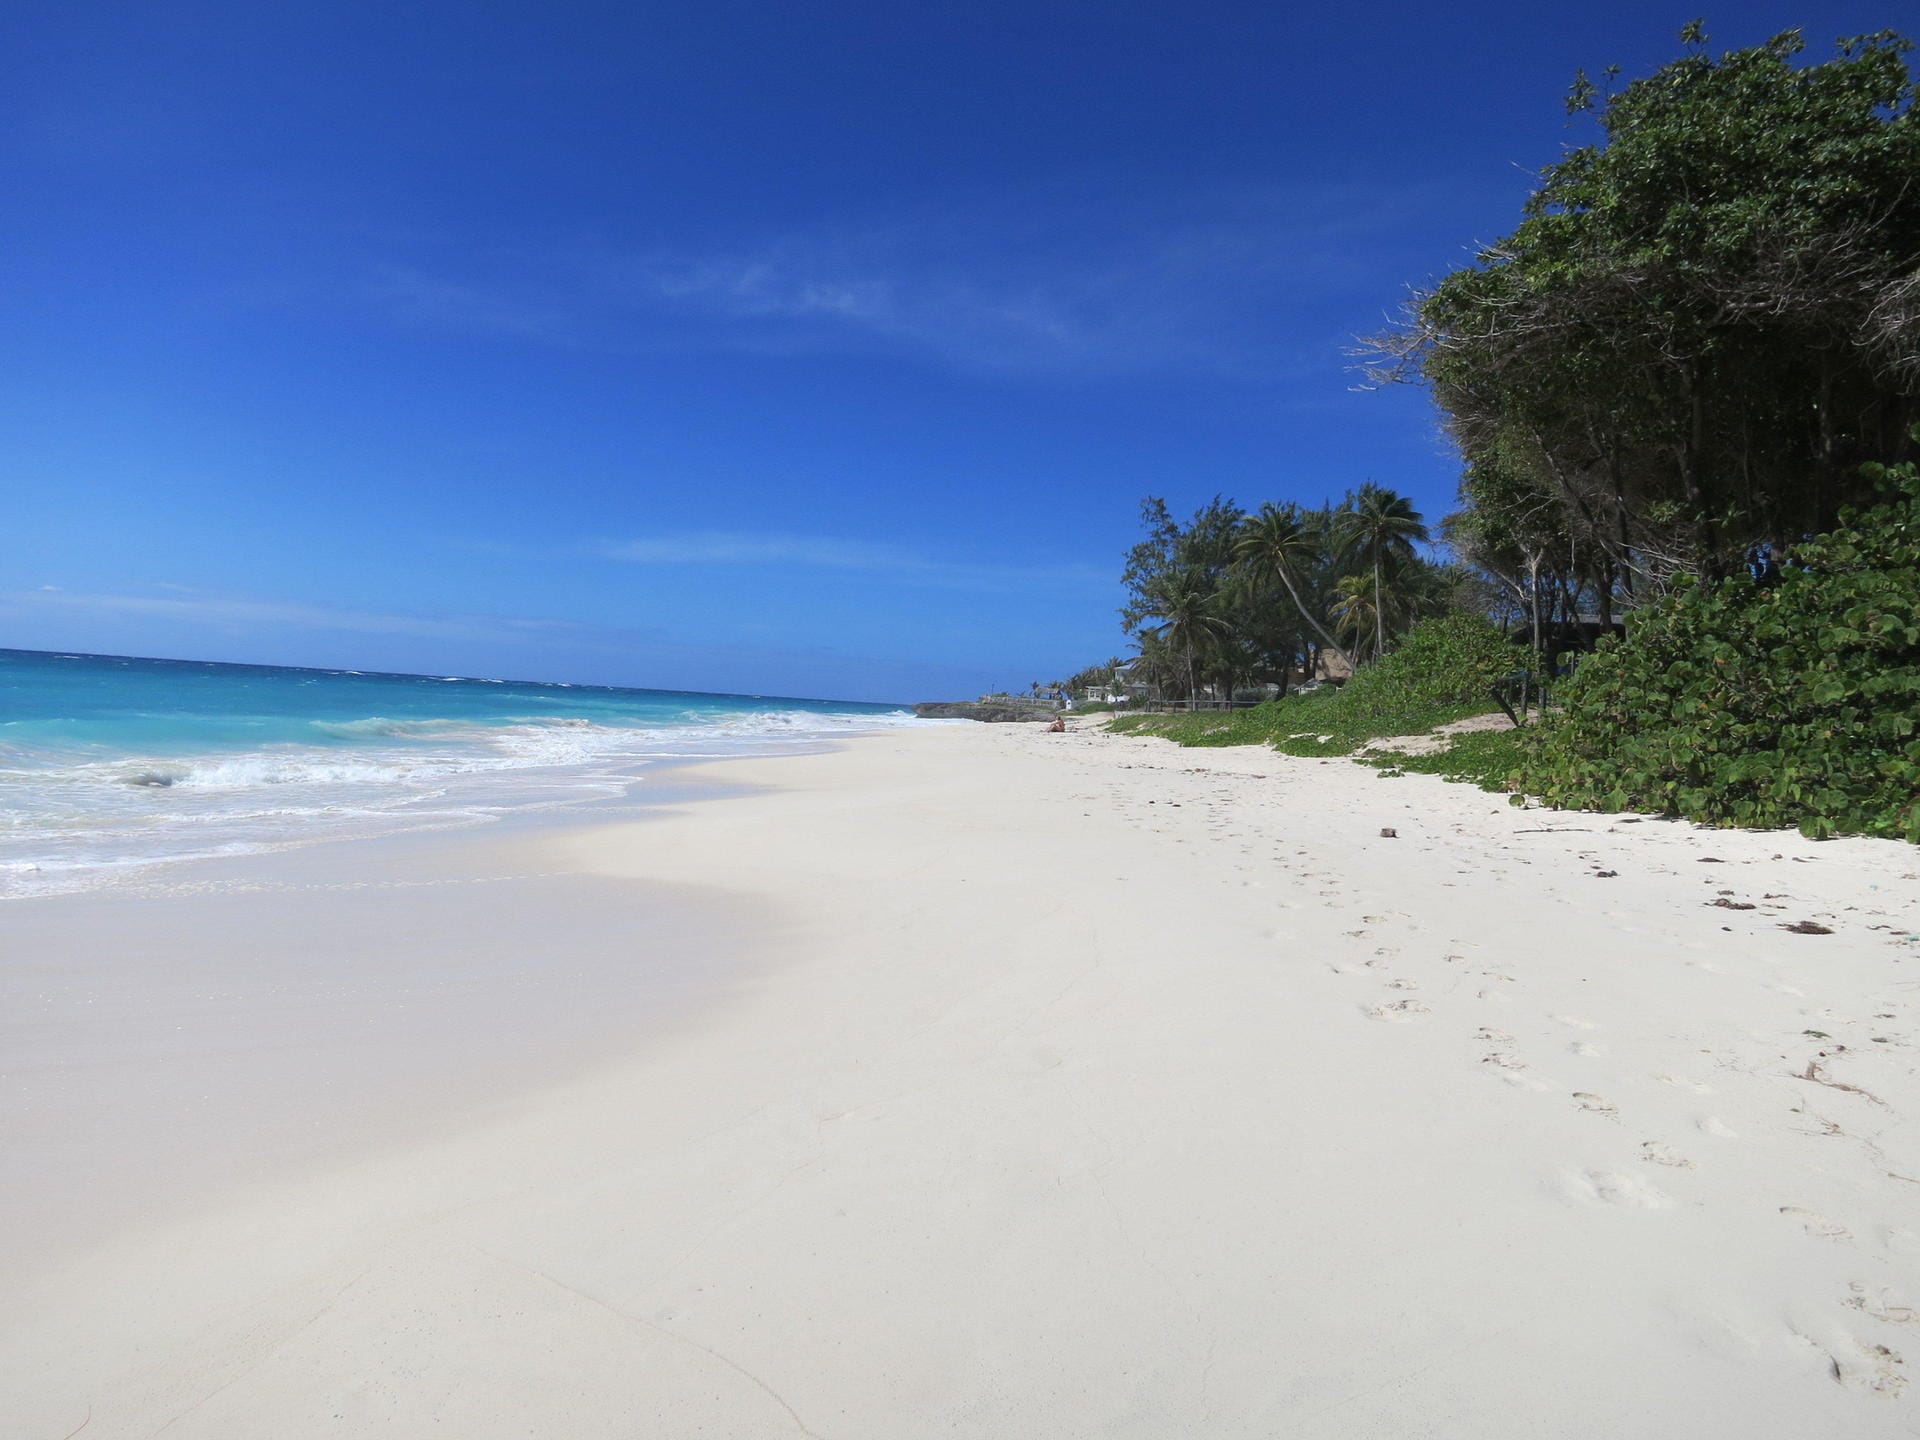 Am südlichsten Zipfel von Barbados befindet sich mit den Inhcaoe Villes ein wahres Paradies für passionierte Surfer. Das glasklare Wasser und die weißen Sandstrände begeistern.